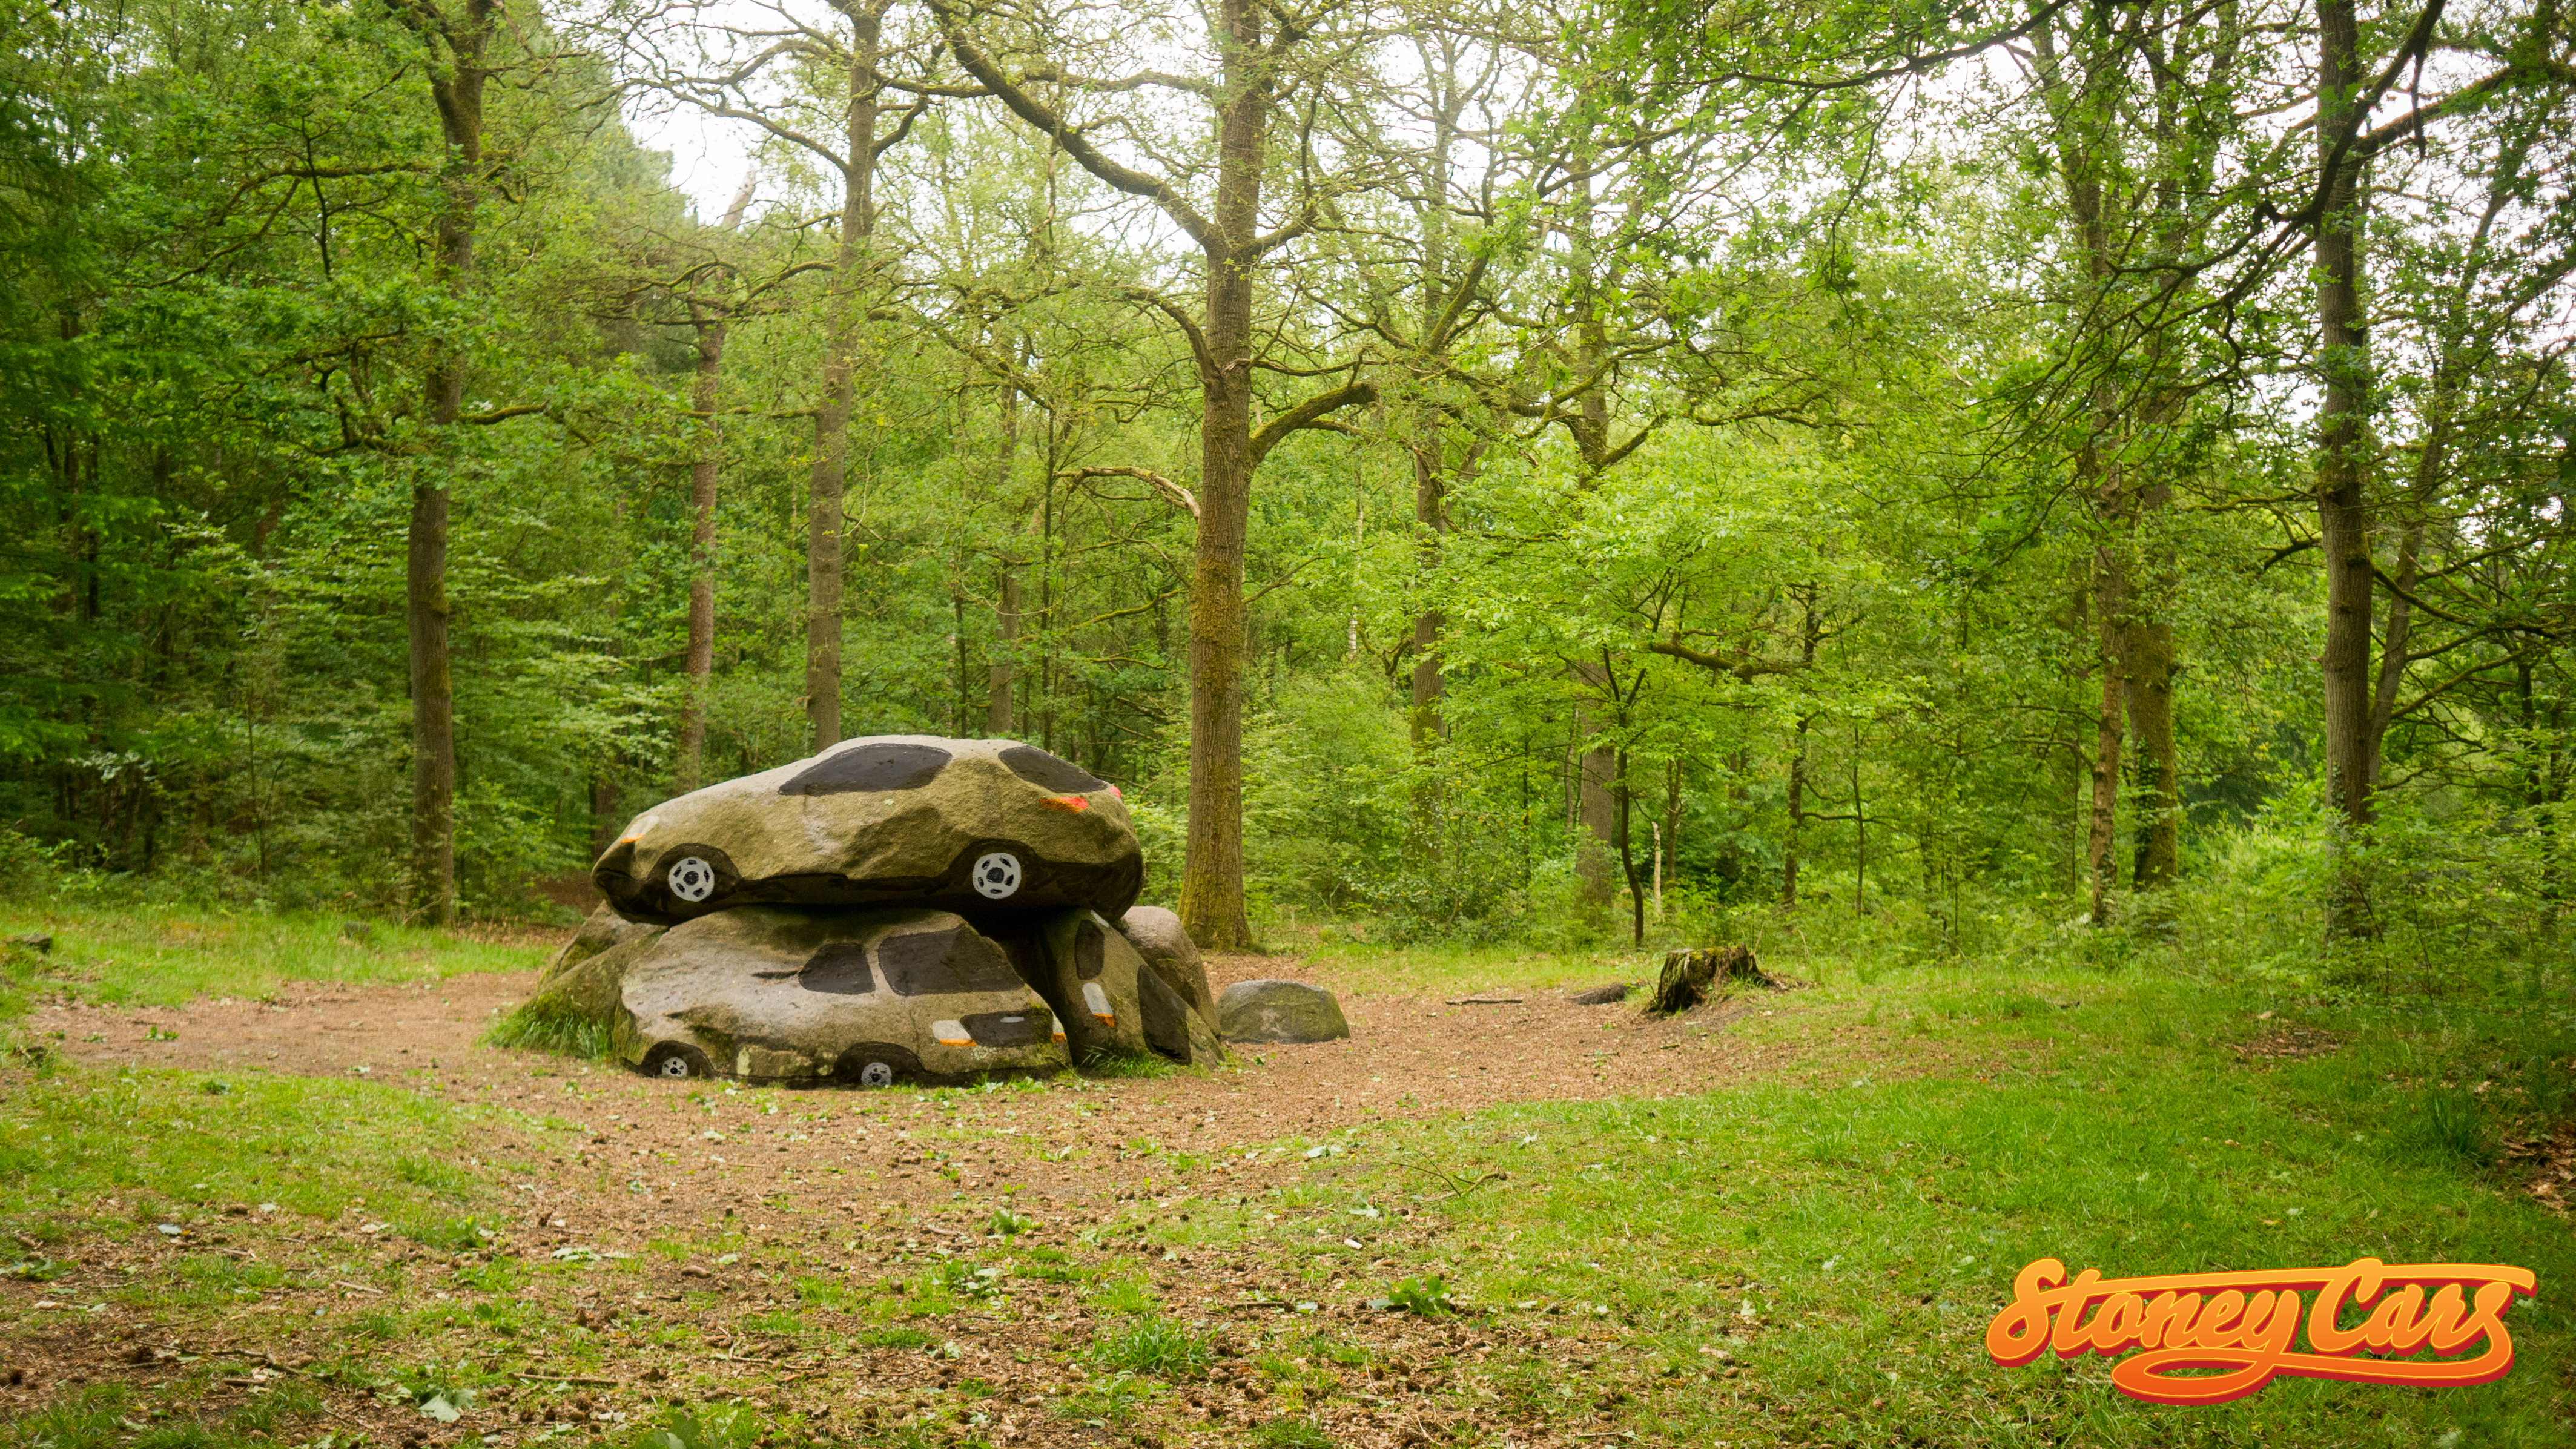 Stoney Cars op werkbezoek in Drenthe